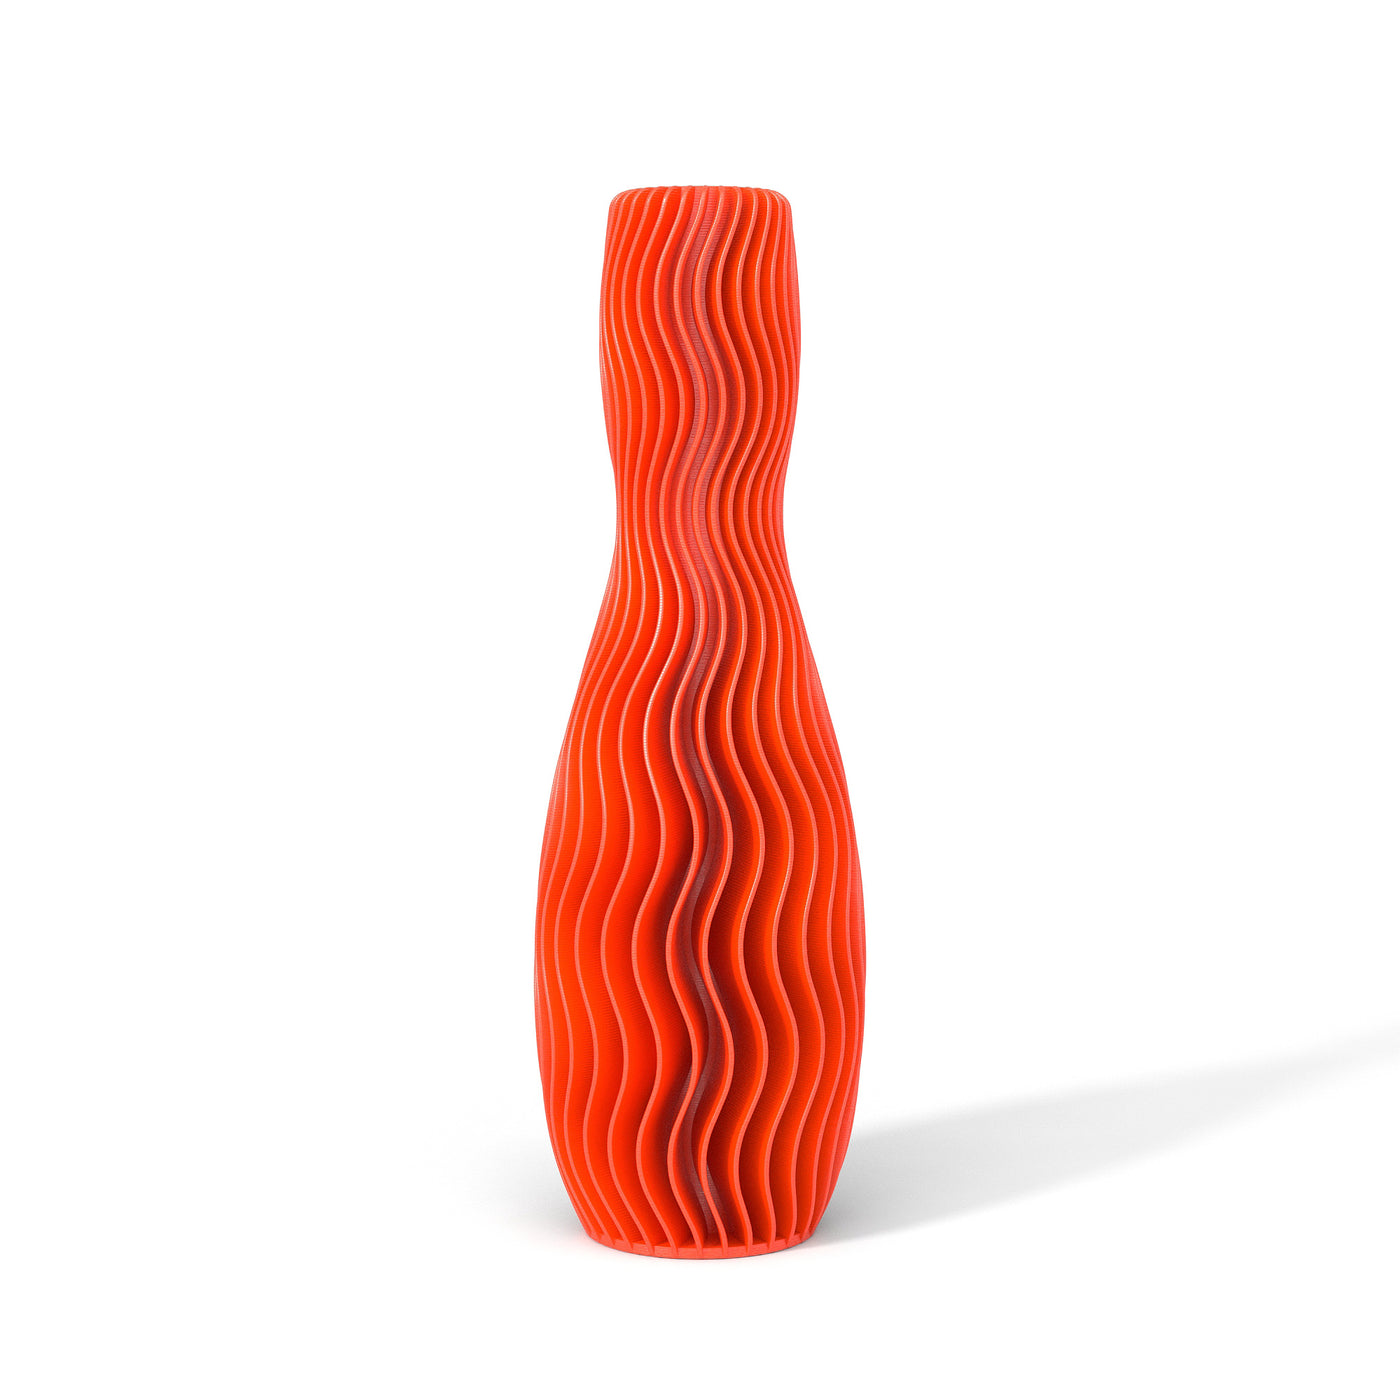 Oranžová designová váza 3D print WAVE 4 zepředu